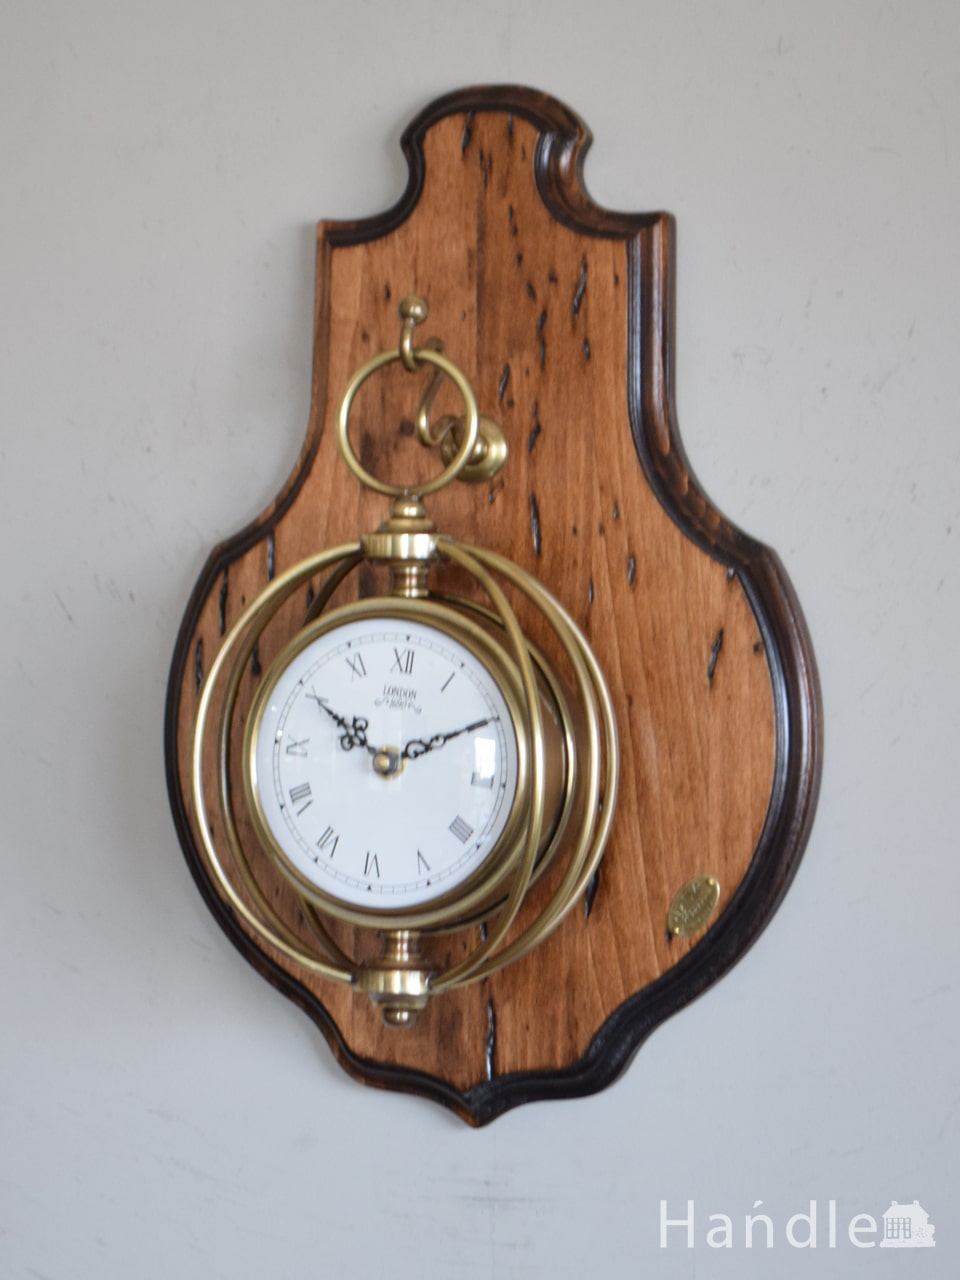 イタリアから届いたアンティーク調の掛け時計、カパーニ社の時計 (n8-110)